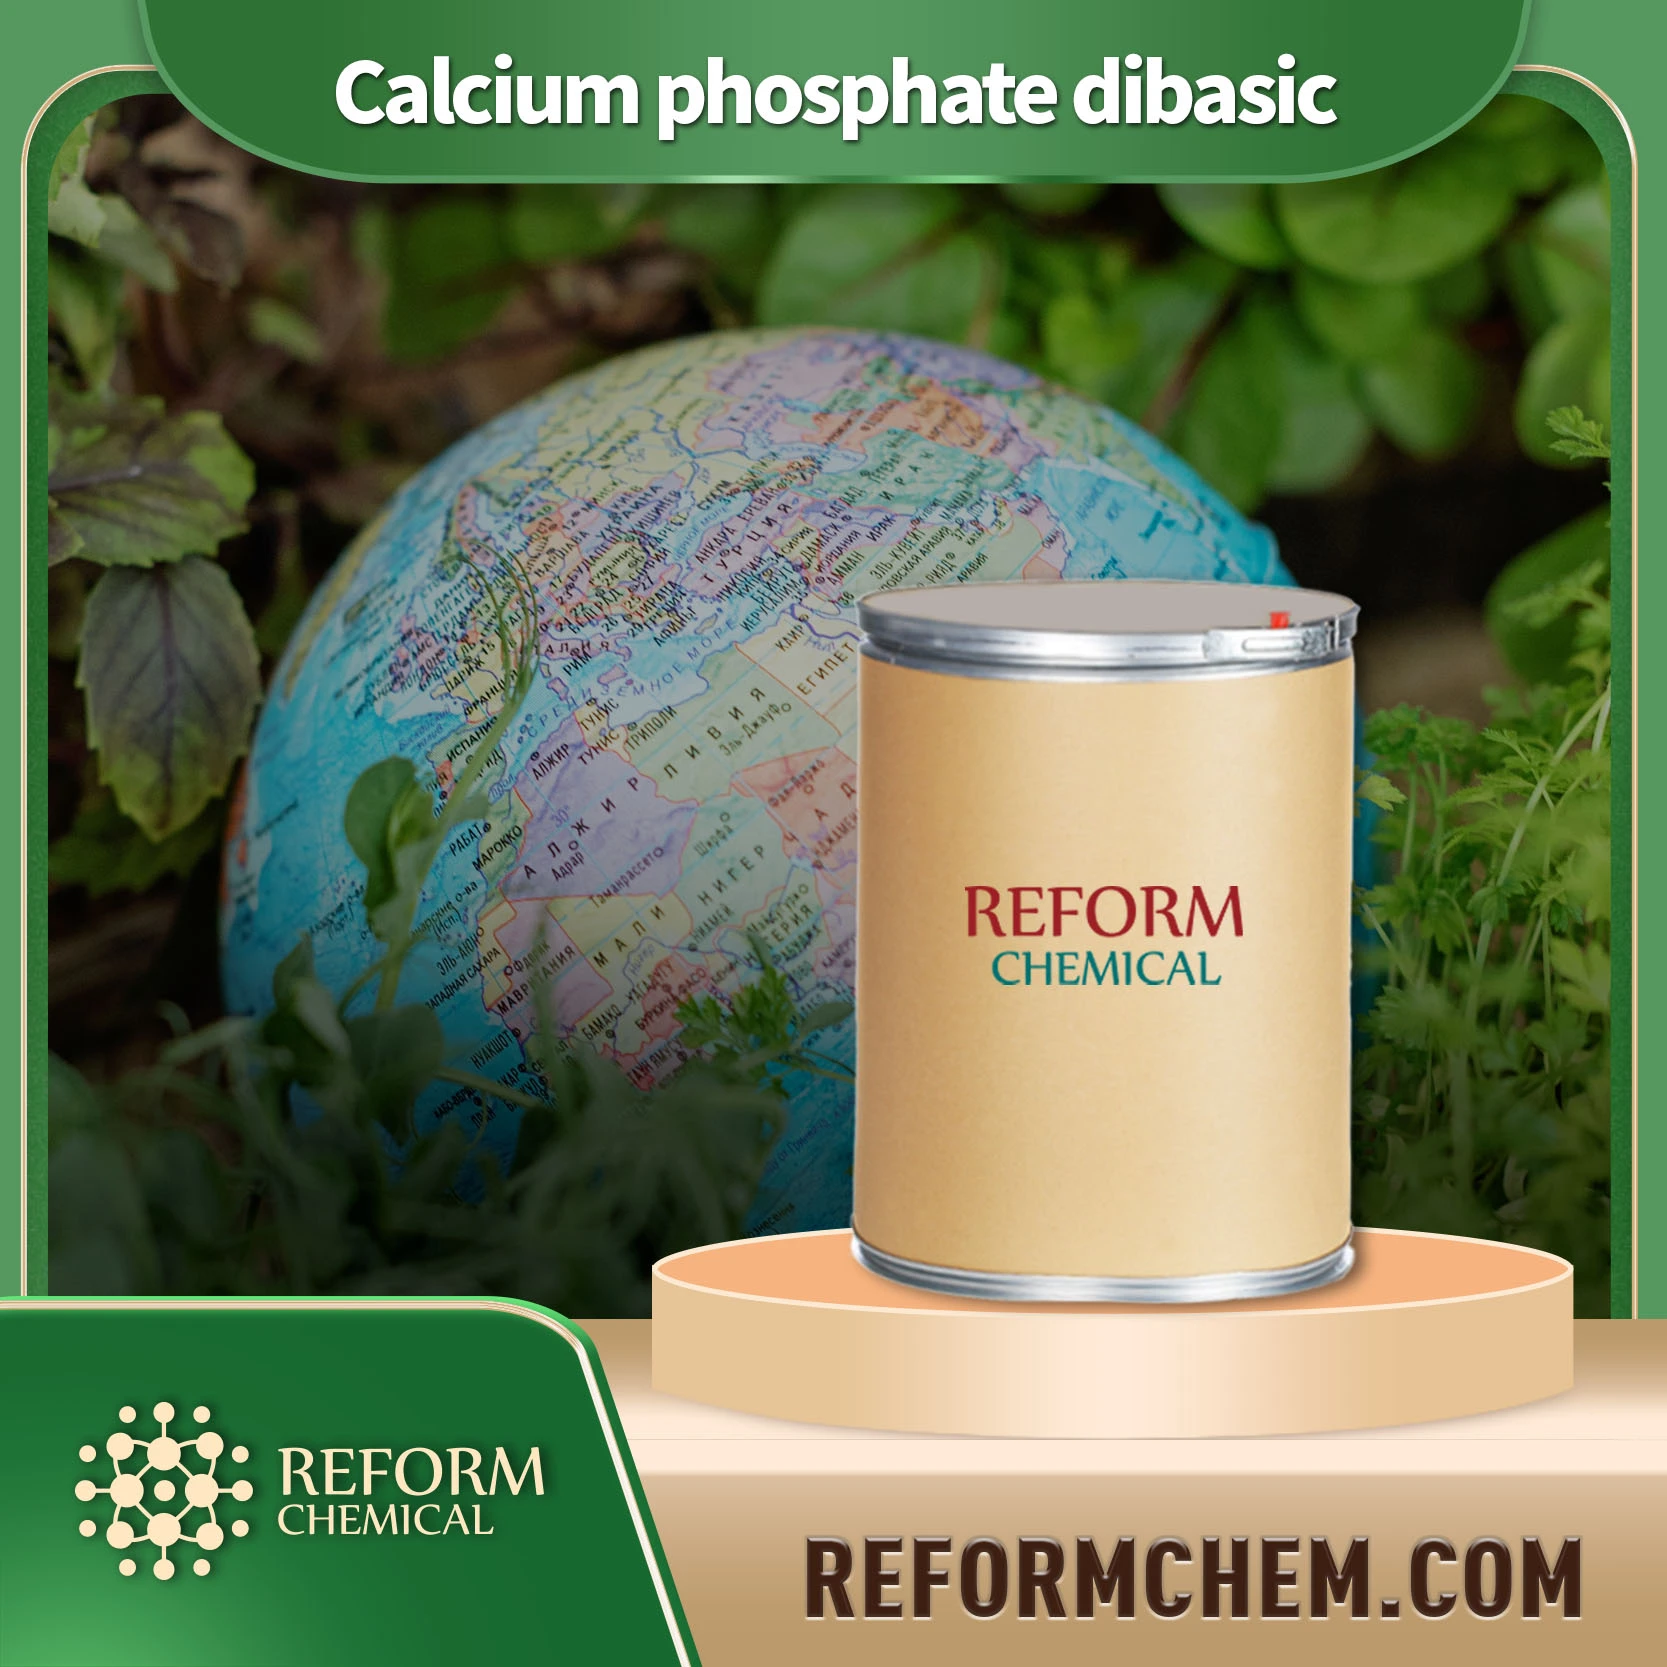 calcium phosphate dibasic7757 93 9